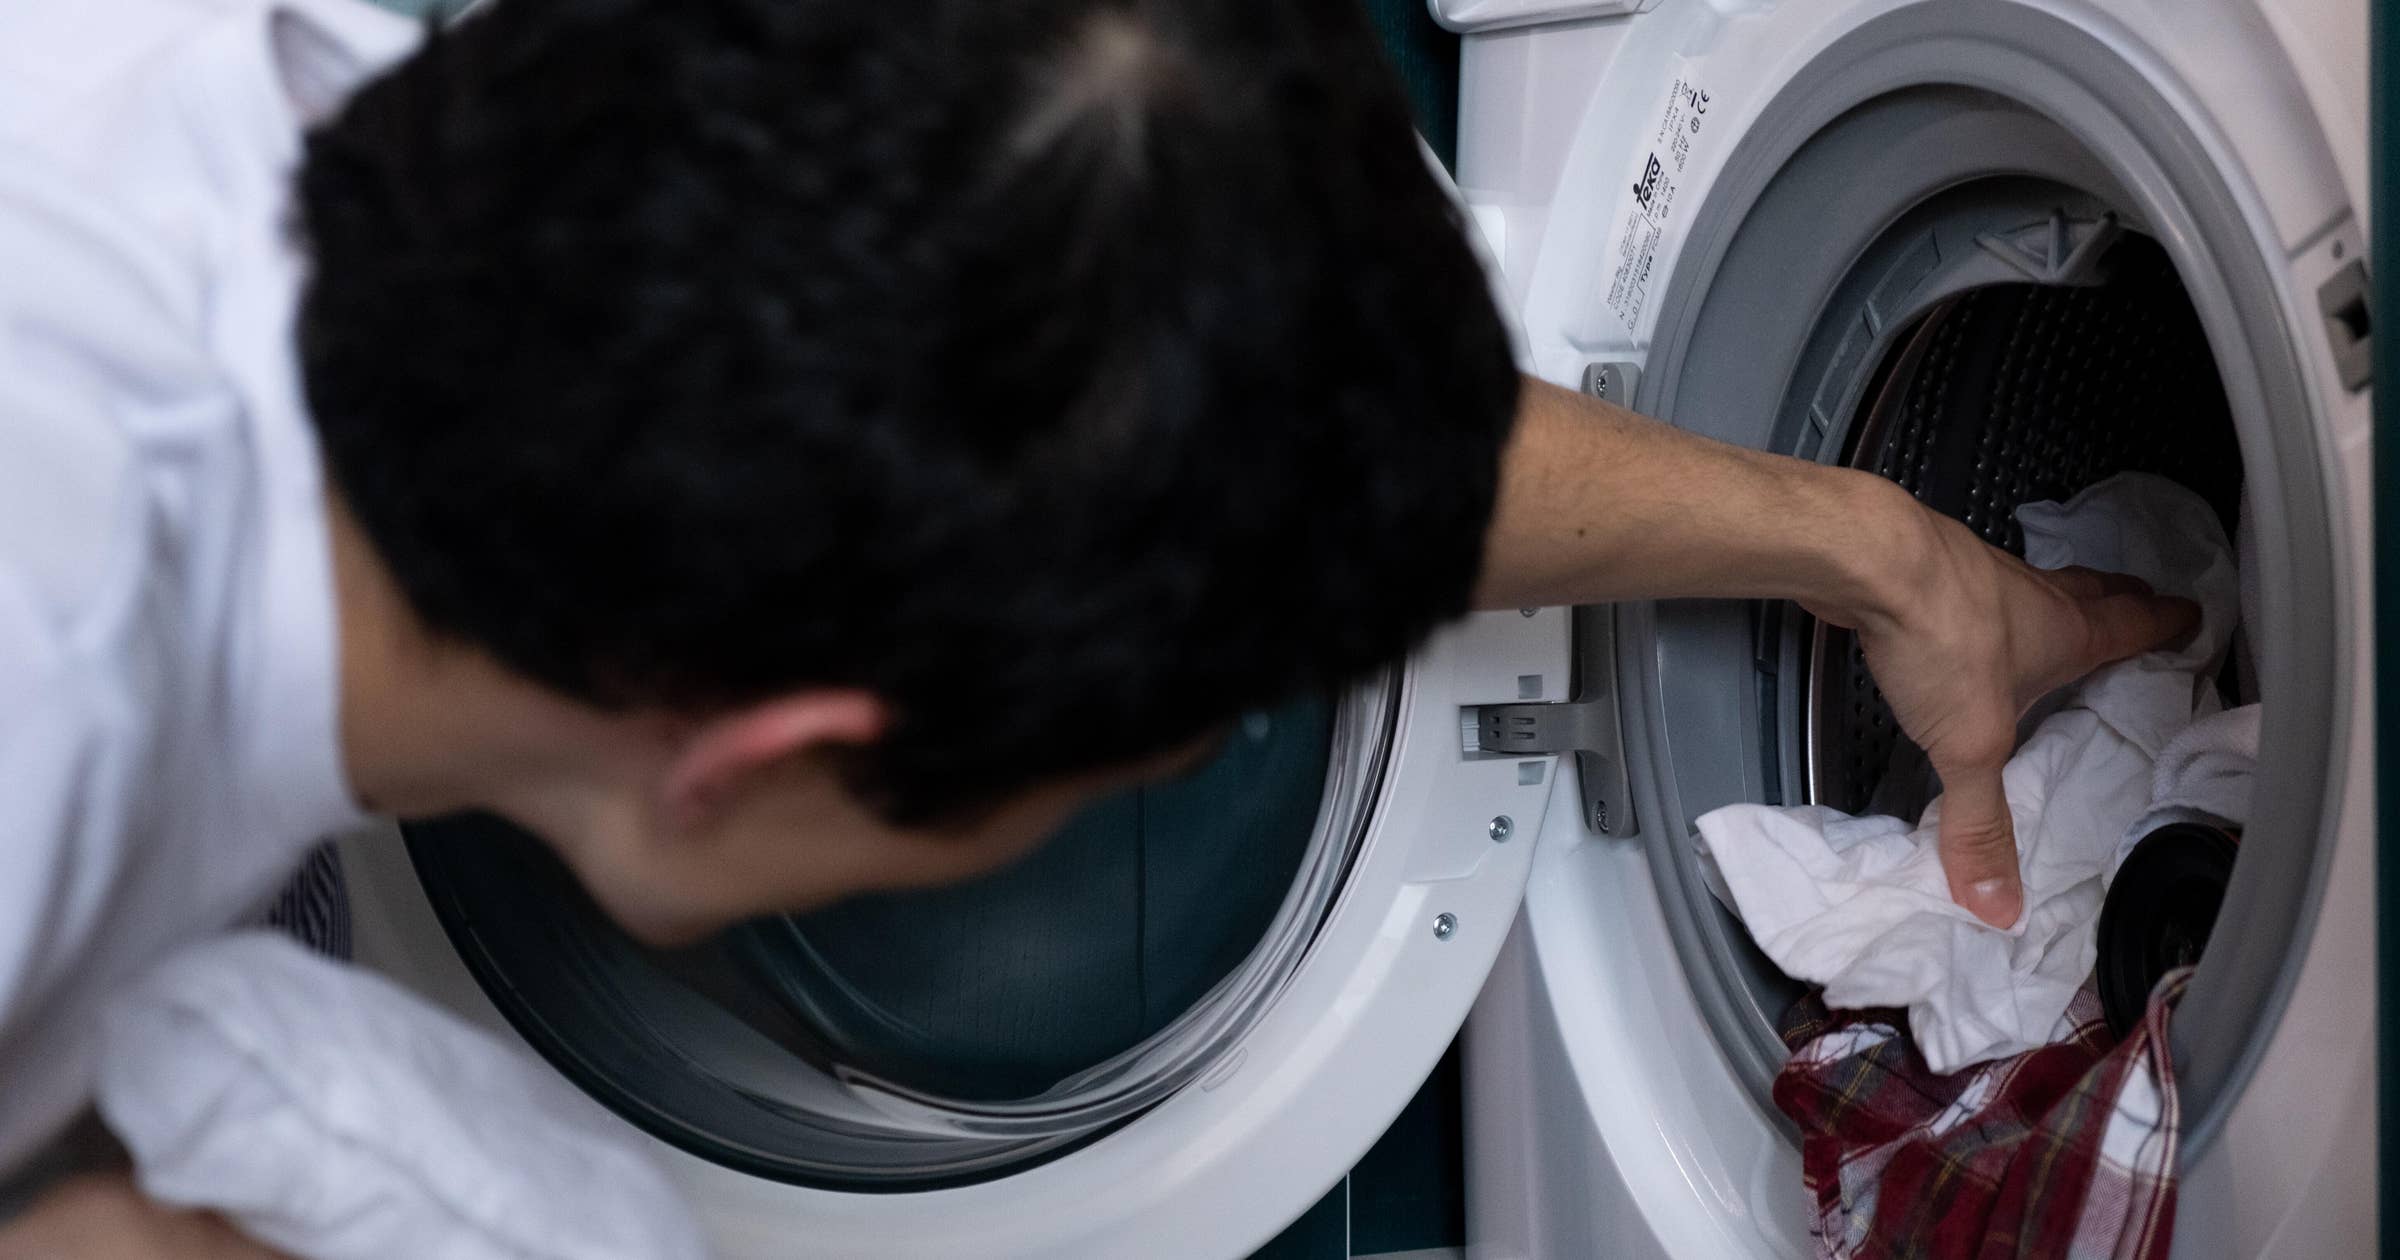 Laundry Attendant Job Description